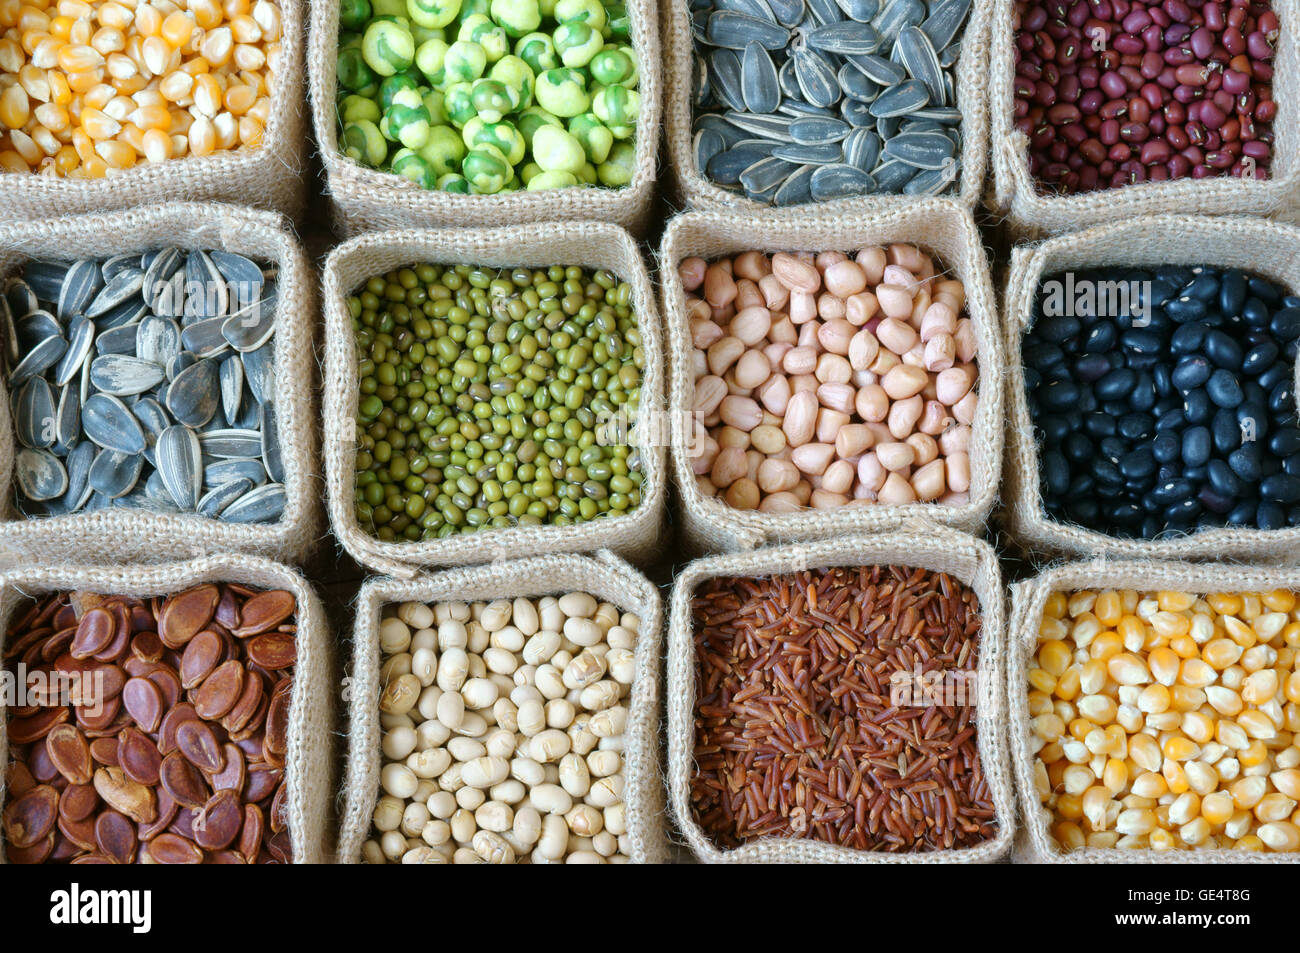 Raccolta di grano, cereali, semi, fagiolo, del prodotto di agricoltura dei paesi dell'Asia, è sana alimentazione, nutrizione e mangiare cibo in fibra Foto Stock